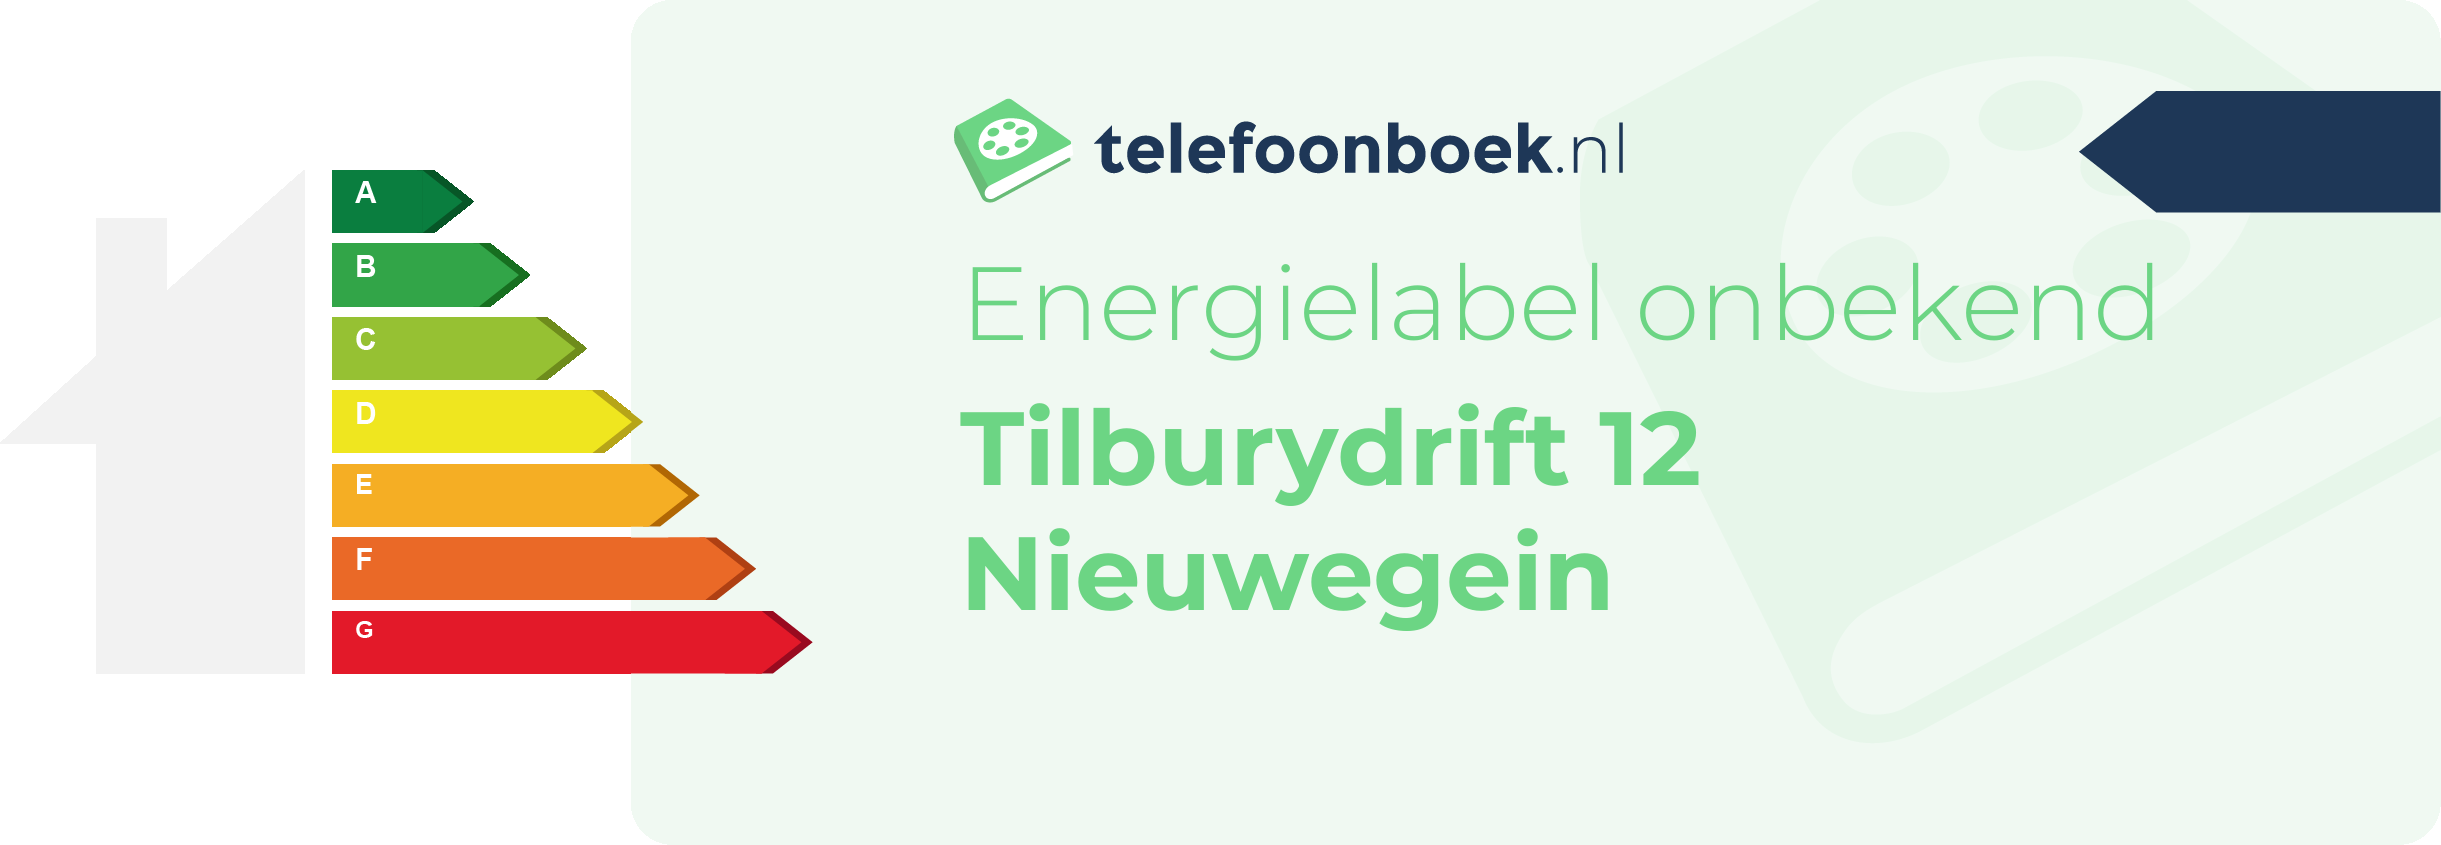 Energielabel Tilburydrift 12 Nieuwegein